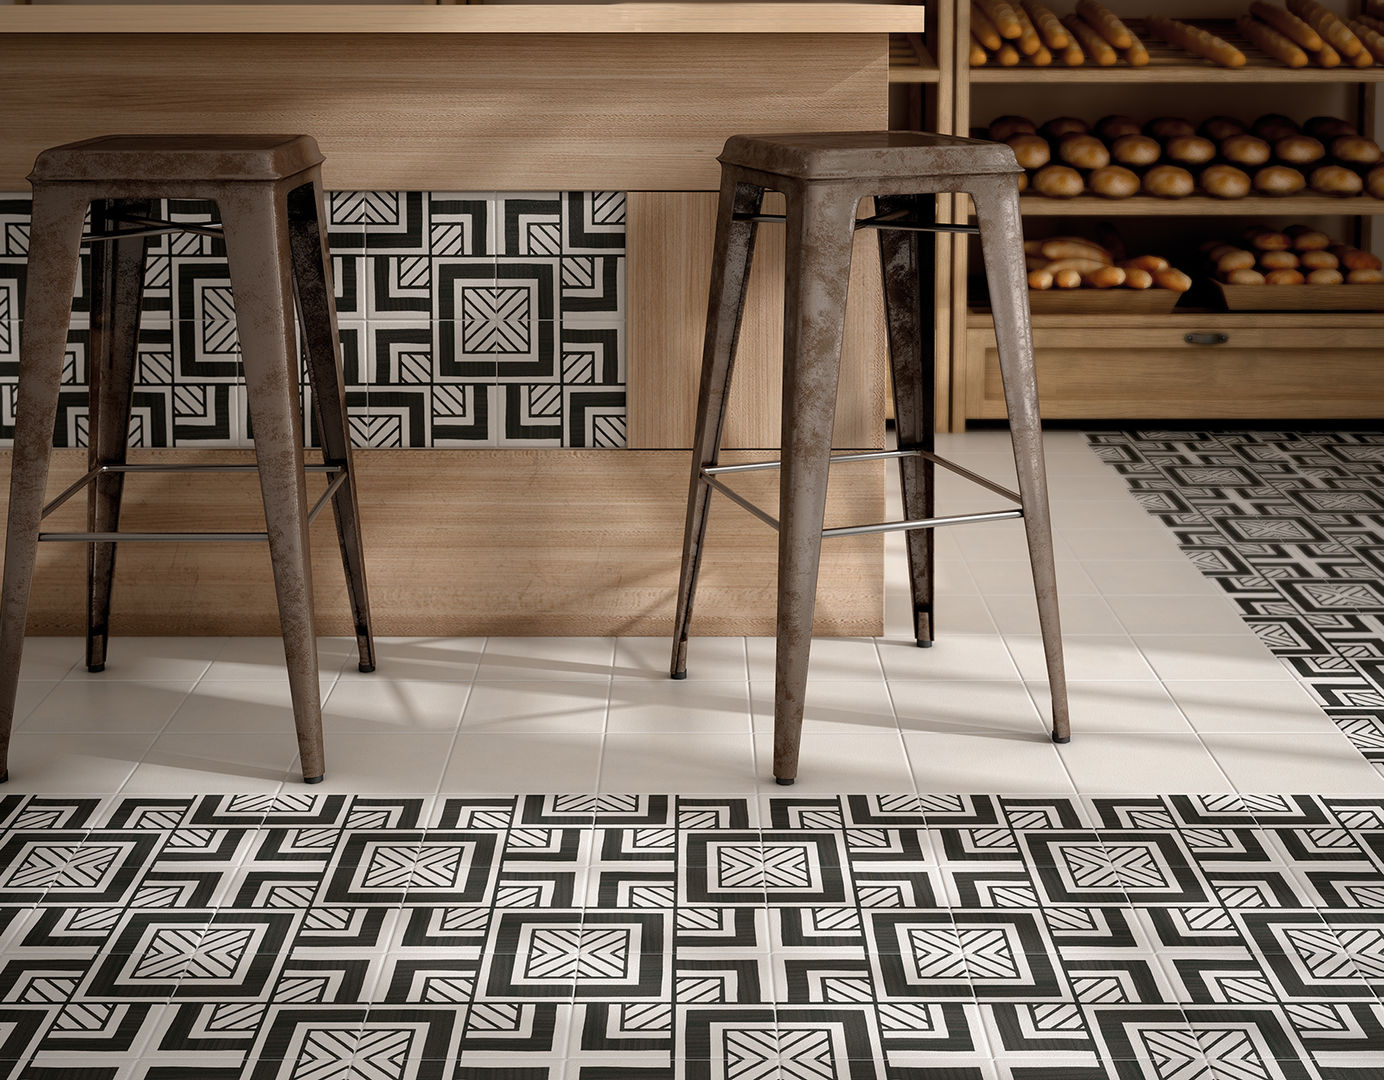 homify Scandinavian style walls & floors Tiles